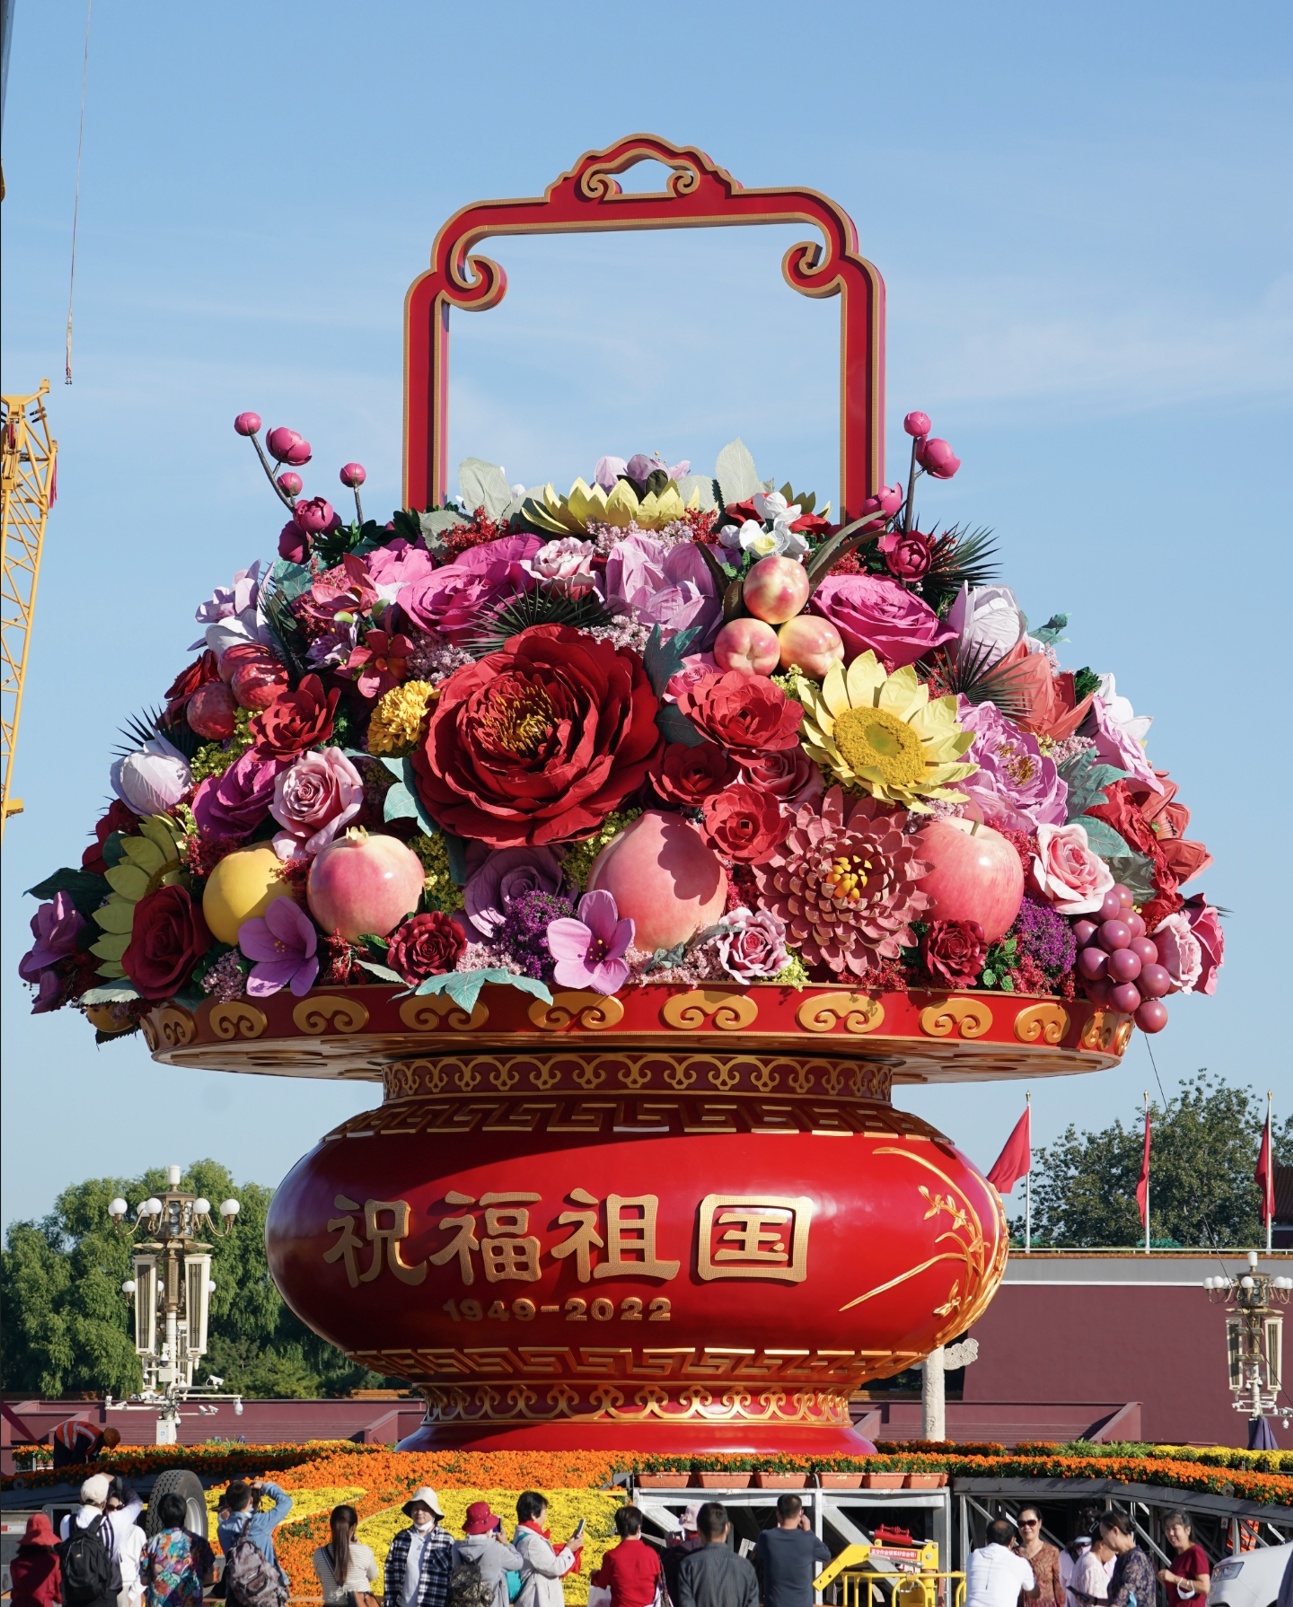 天安门广场“祝福祖国”巨型花果篮亮相